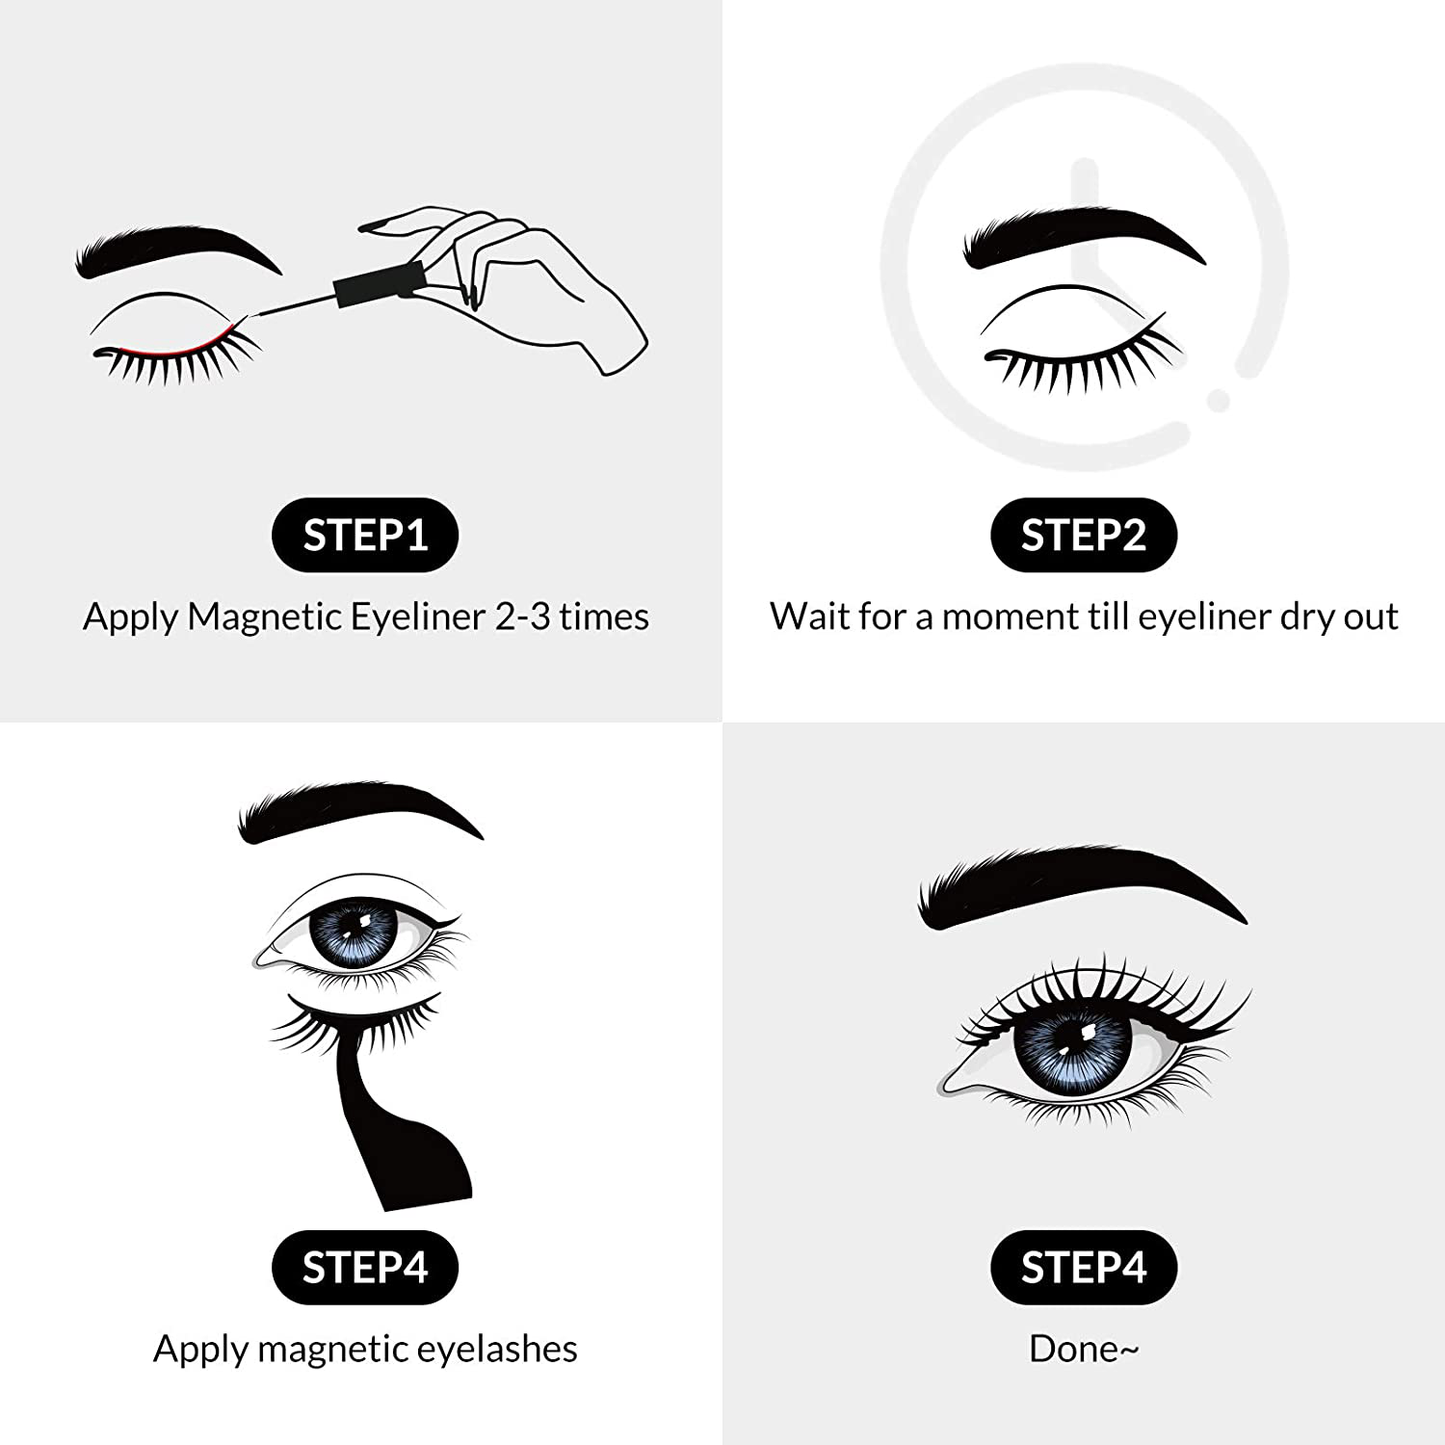 BEPHOLAN Magnetic Eyelashes with Eyeliner Kit, 5 Styles and Comes with 2 Tubes of Magnetic Eyeliner, Safe Ingredients&Comfortable, No Glue&Easy to Use, Magnetic Eyelashes Set Five